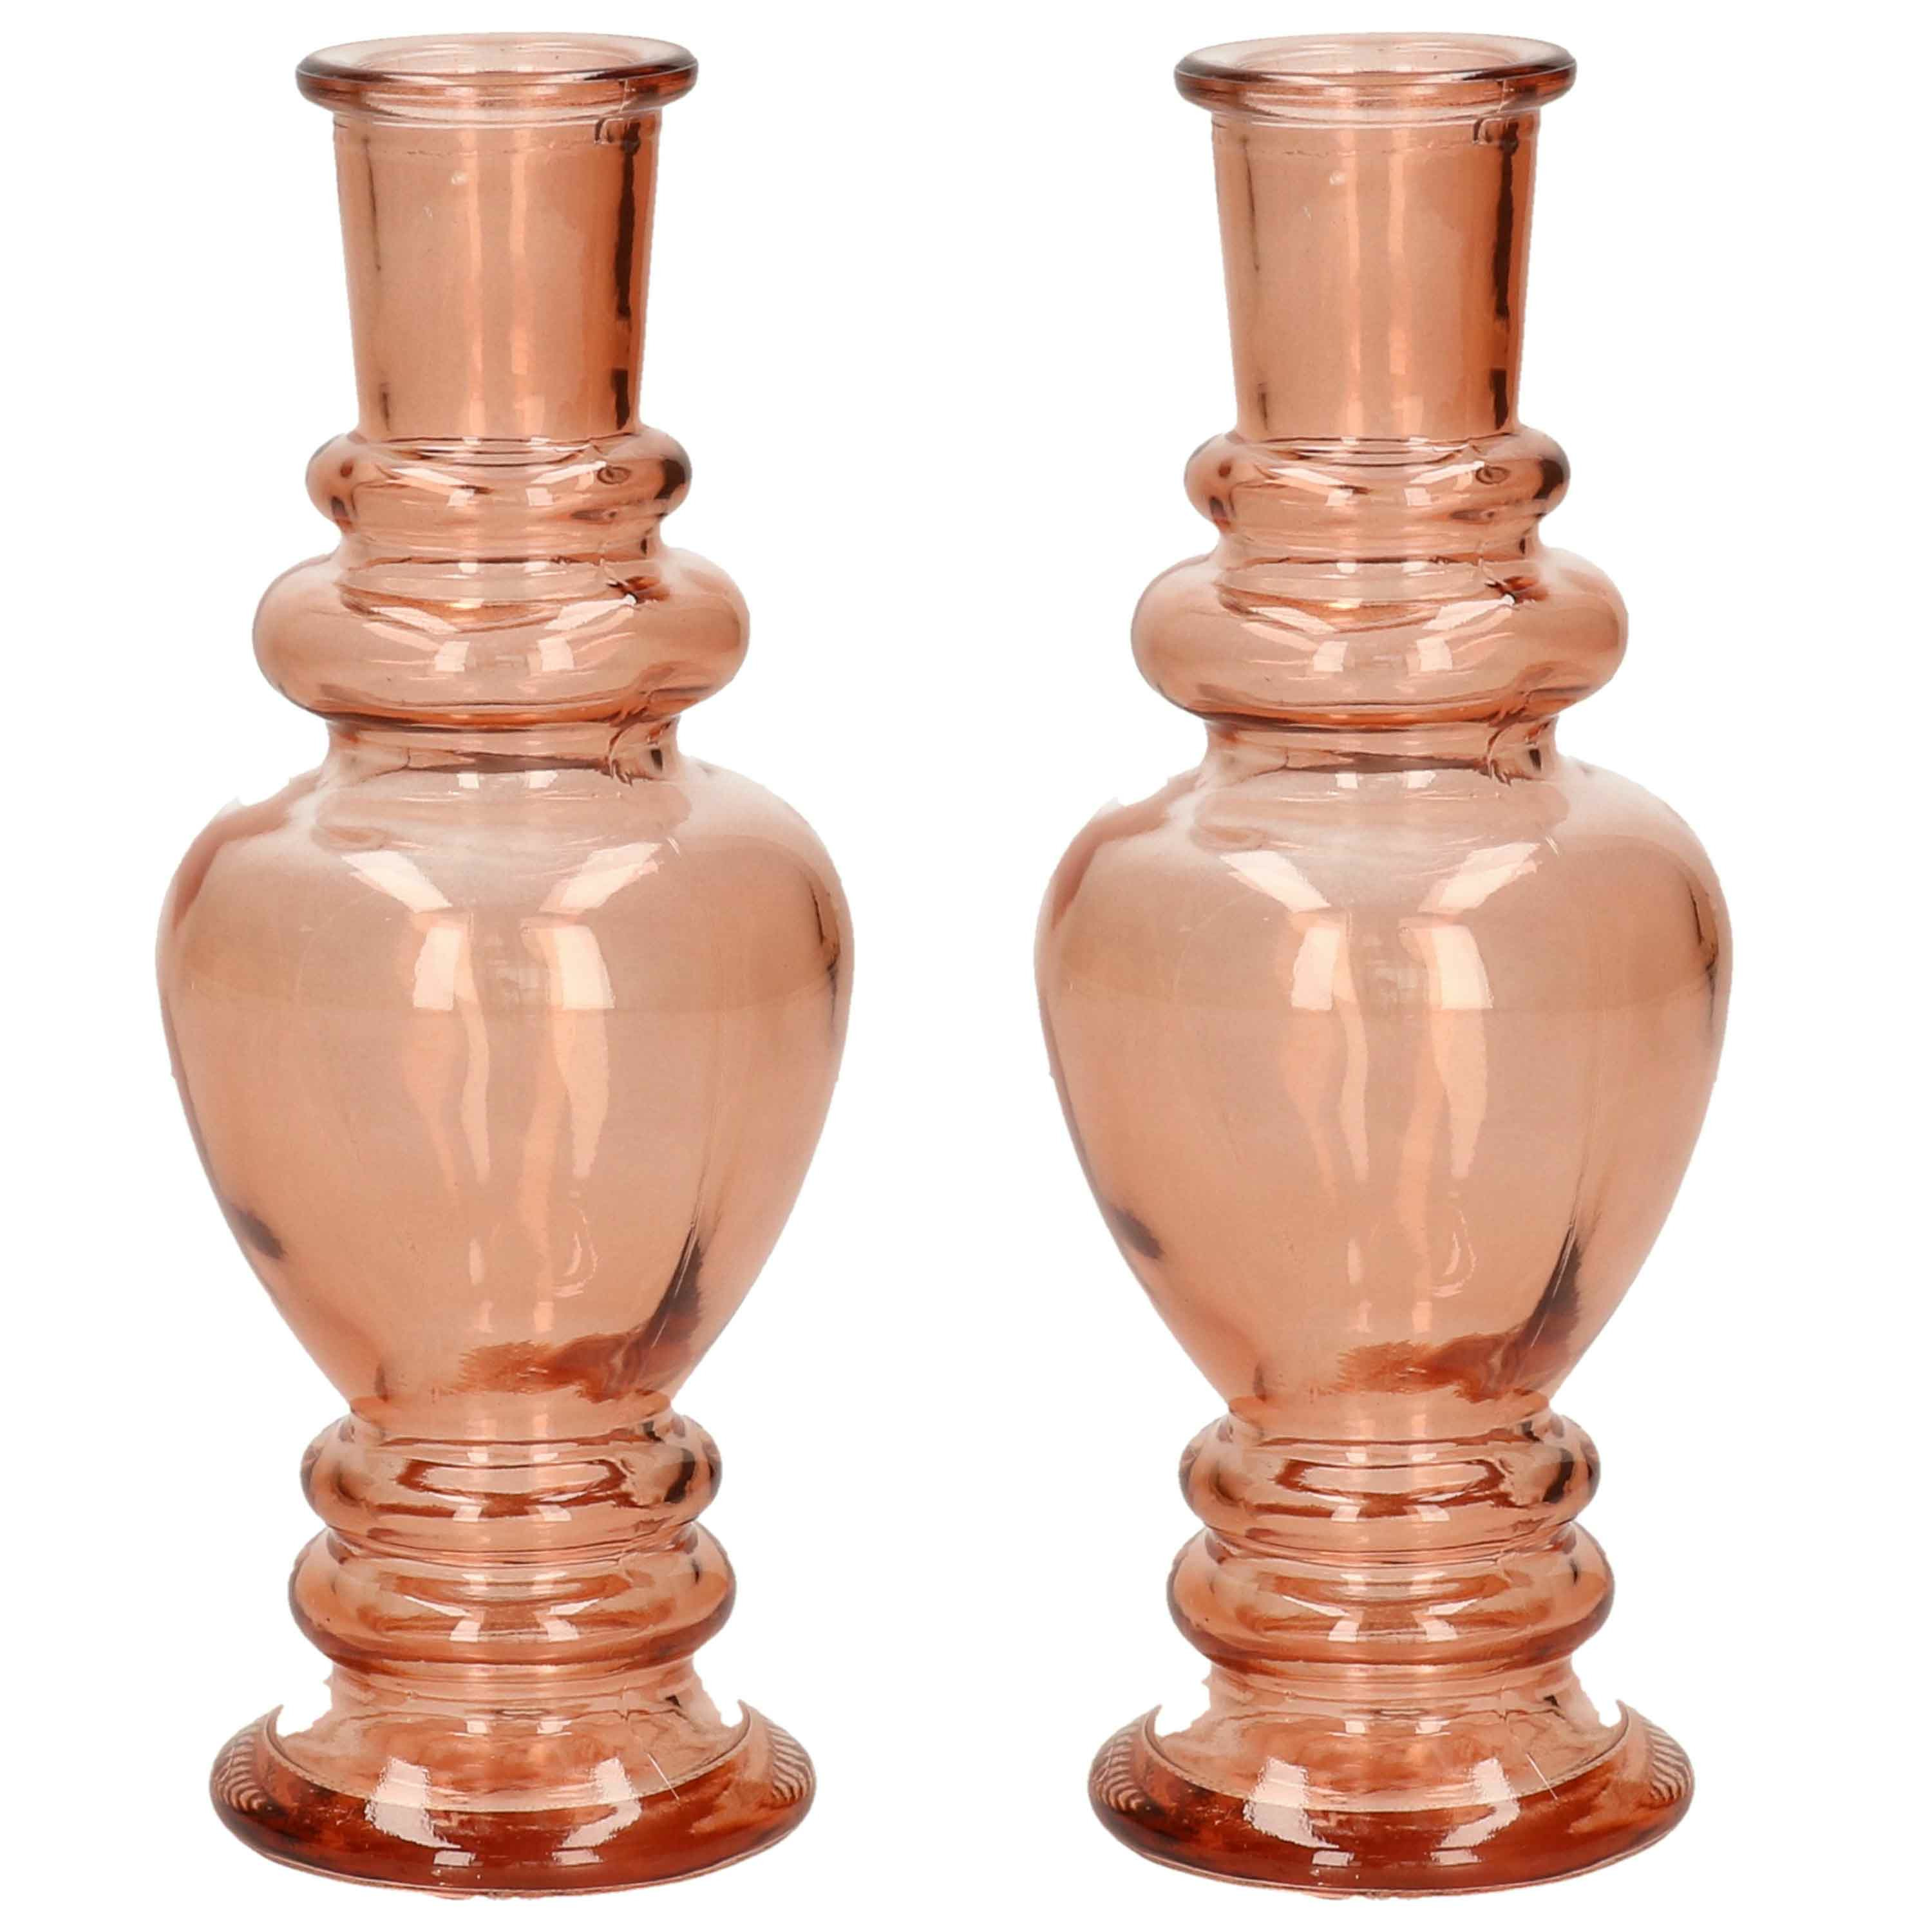 Kaarsen kandelaar Venice 2x gekleurd glas helder zacht oranje D5,7 x H15 cm